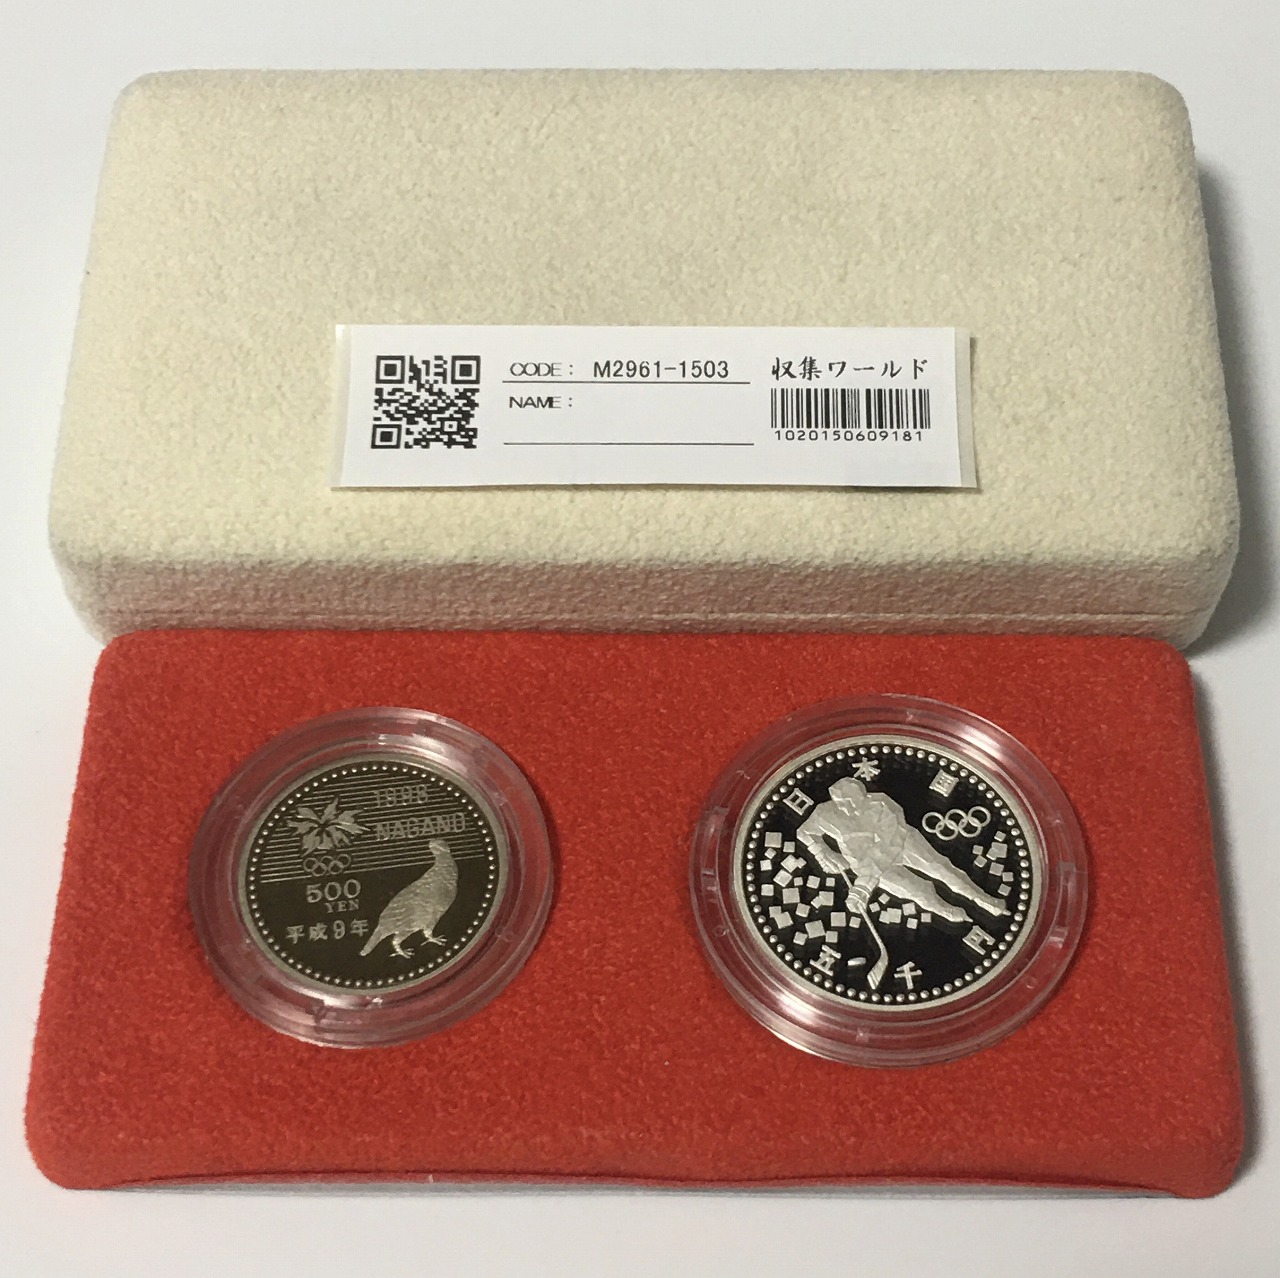 長野オリンピック冬季競技大会記念 5000円銀貨と500円白銅貨2枚セット 